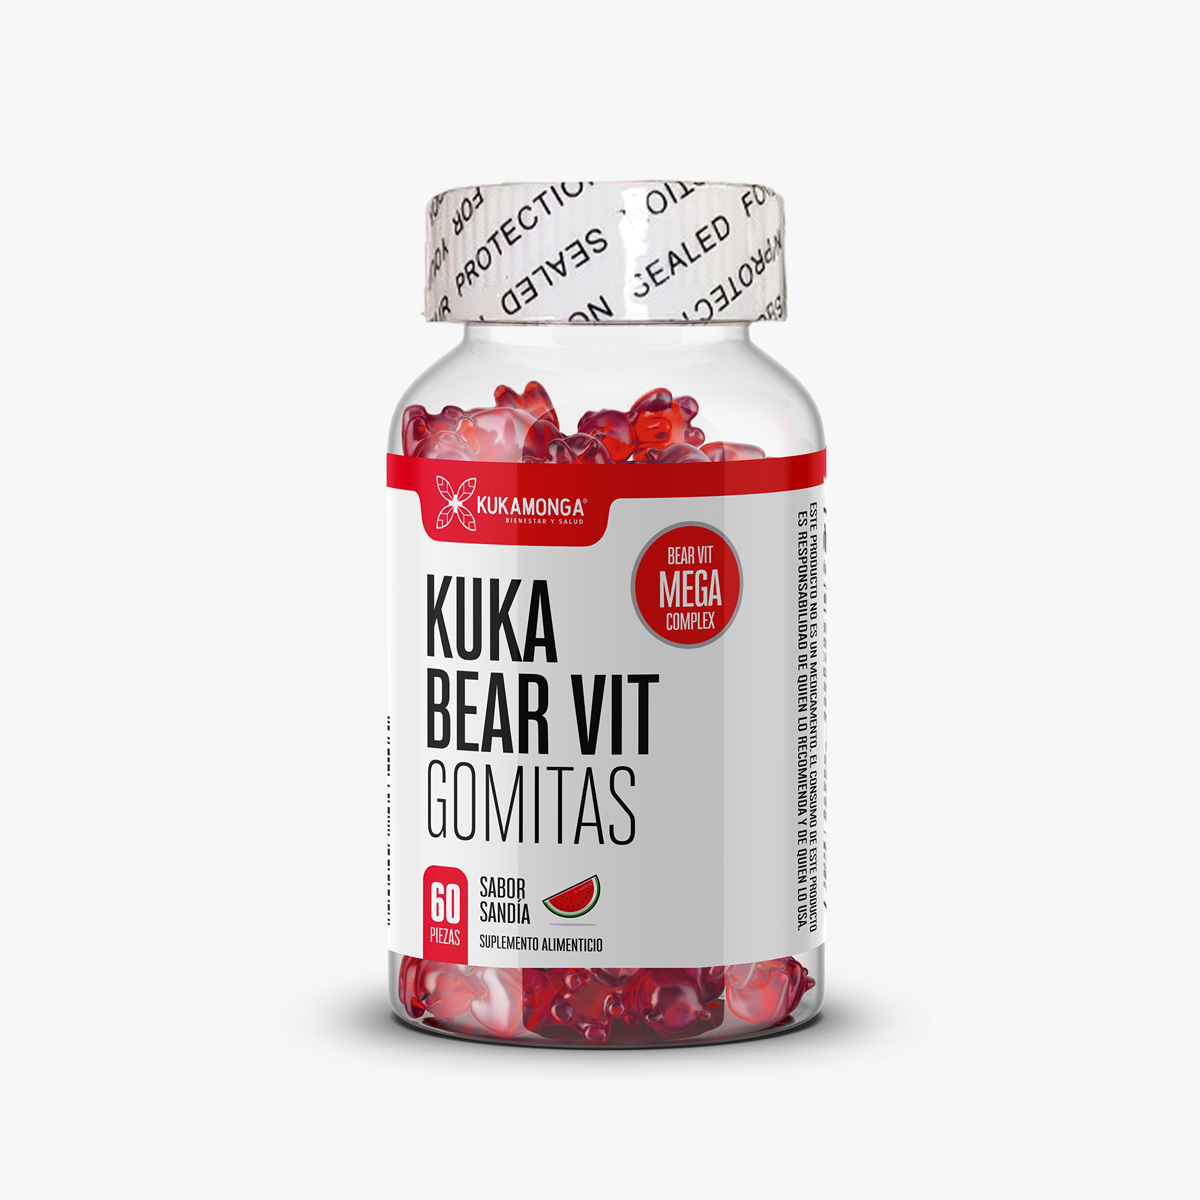 Kuka Bear Vit – complejo de vitaminas en gomitas sabor sandía